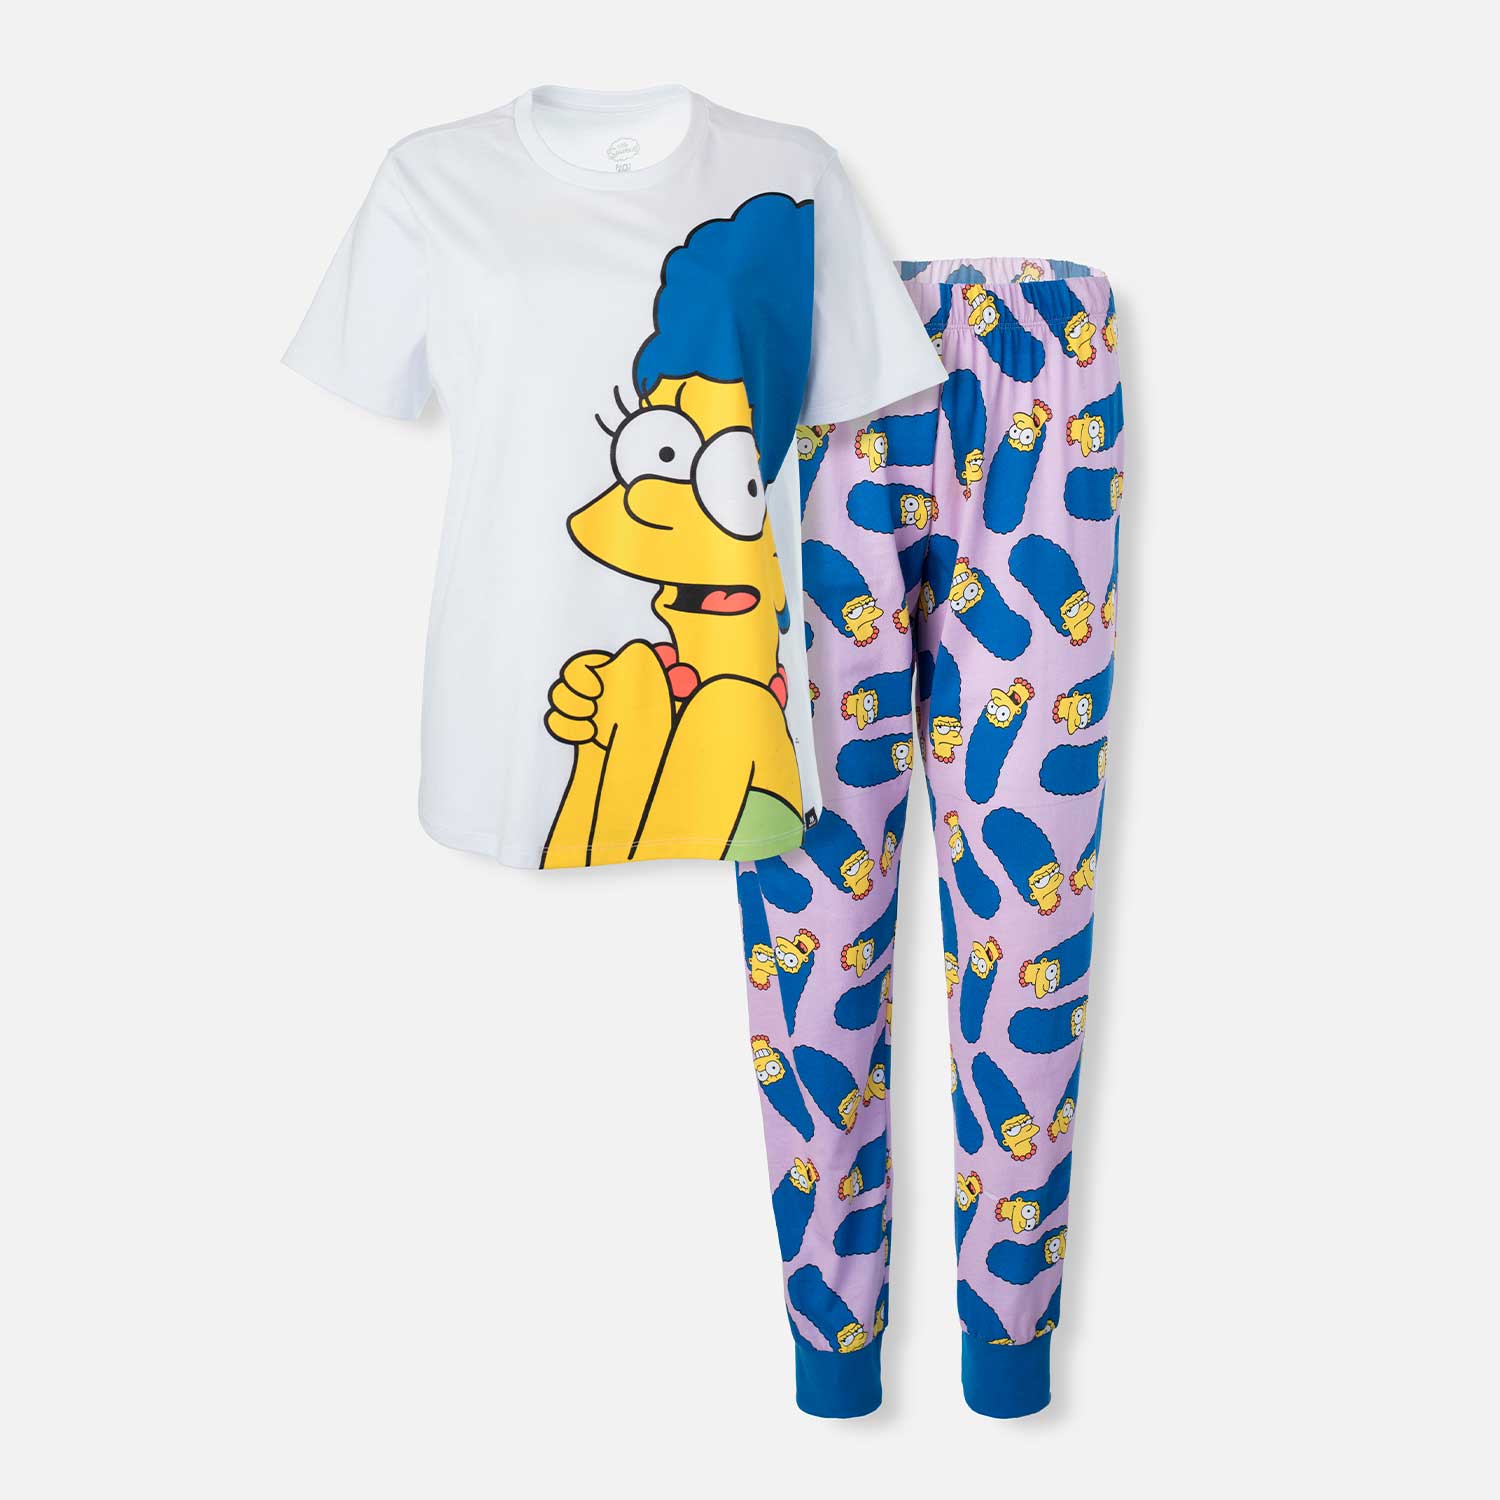 entrar viva fiesta Pijama de Marge Simpson multicolor de pantalón largo para mujer -  MoviesShop | Productos licenciados